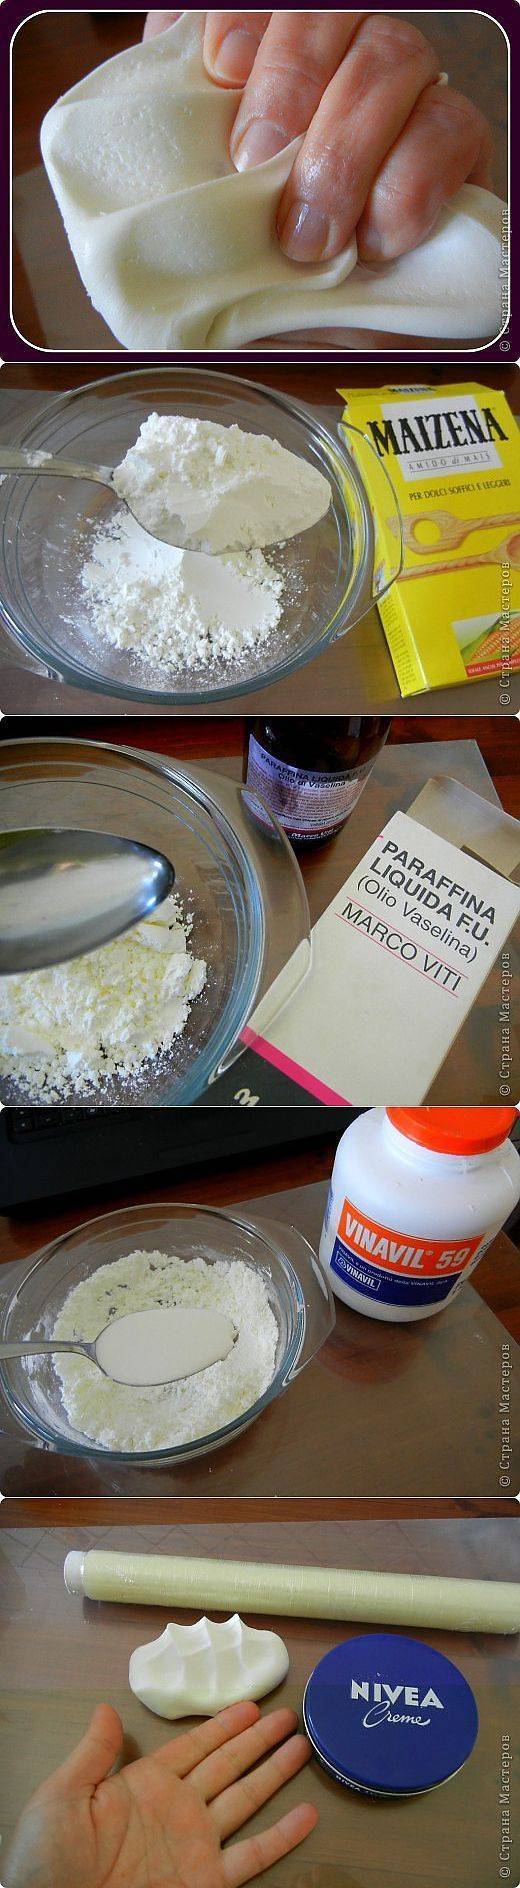 Как сделать полимерную глину своими руками в домашних условиях — инструкция и рецепты